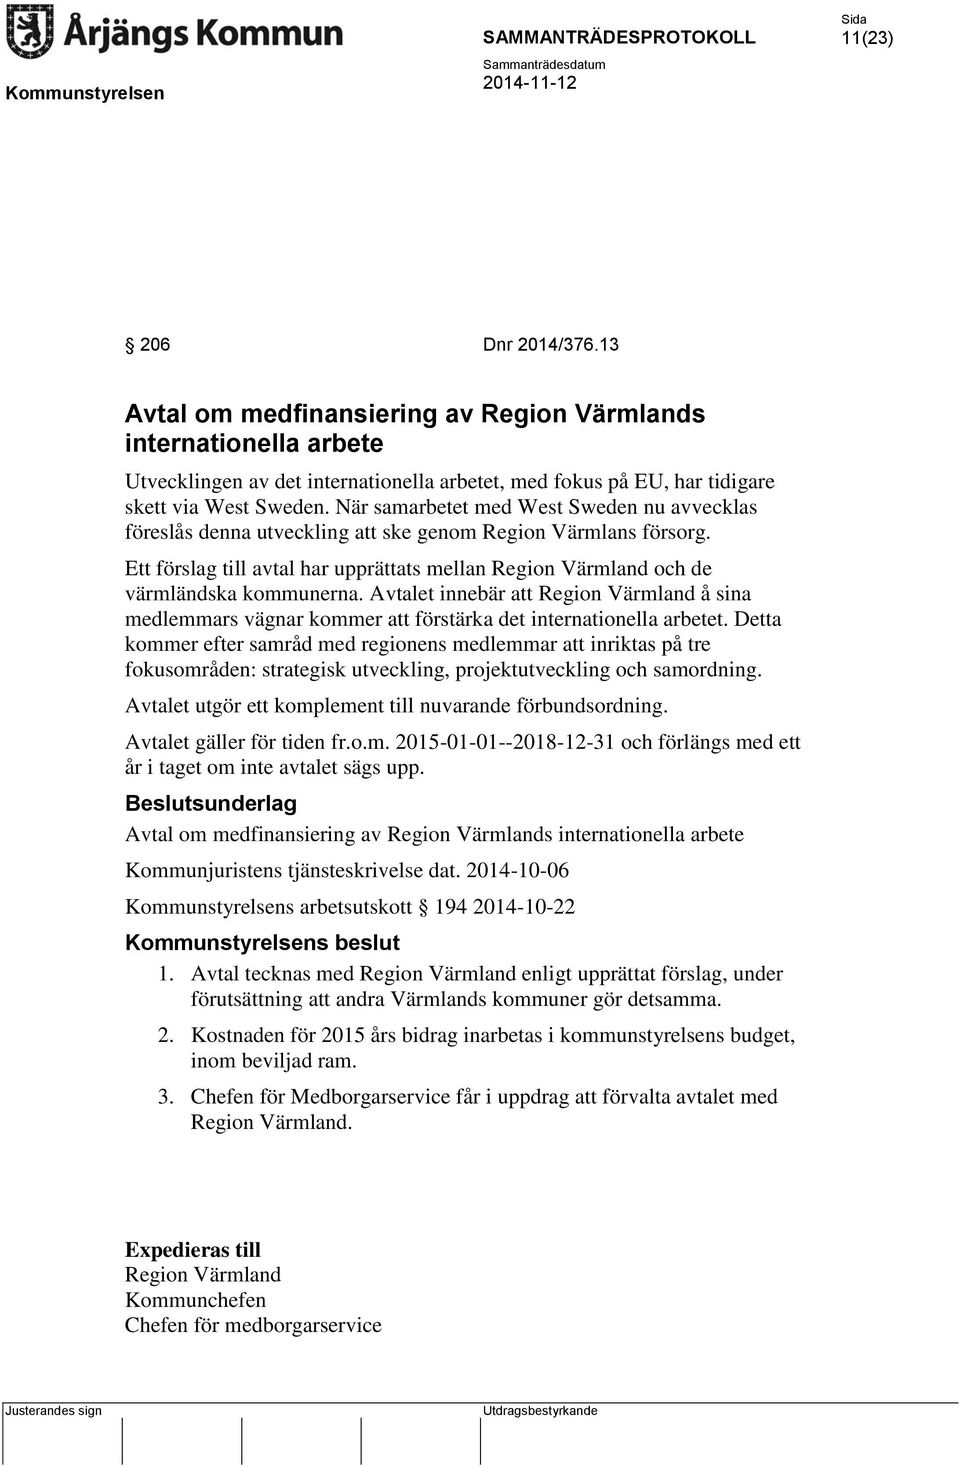 Avtalet innebär att Region Värmland å sina medlemmars vägnar kommer att förstärka det internationella arbetet.